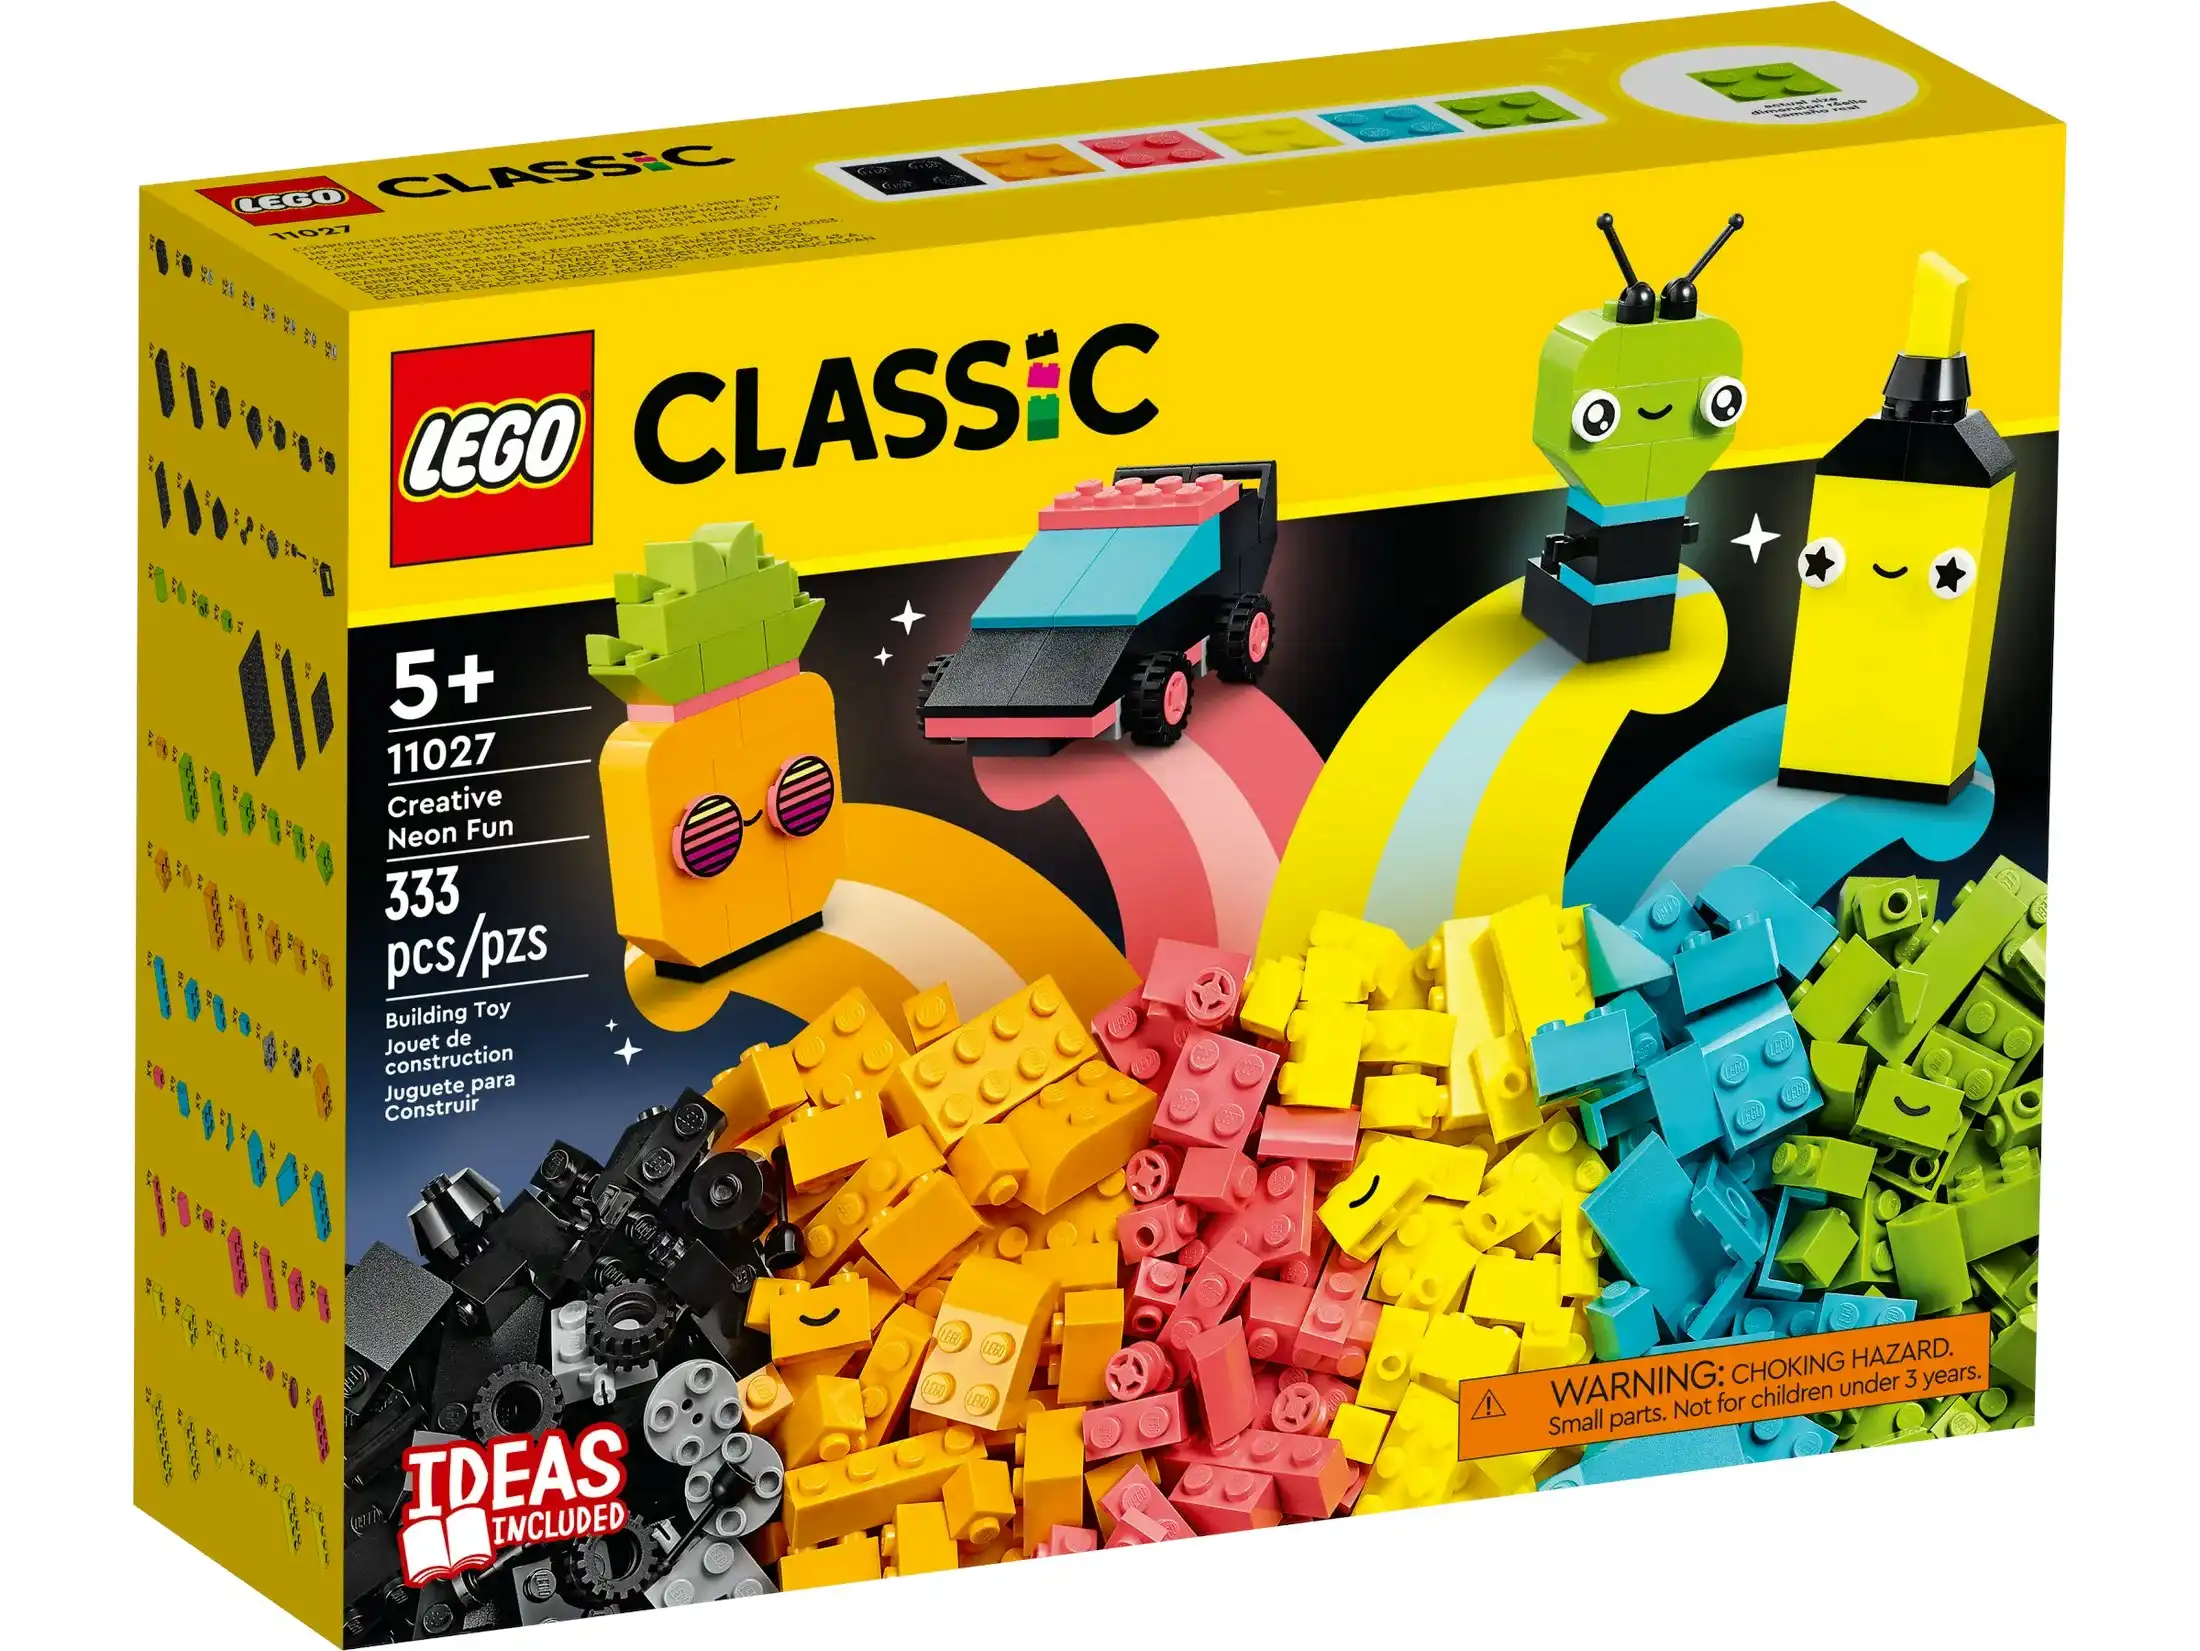 LEGO 11027 Creative Neon Fun - Classic